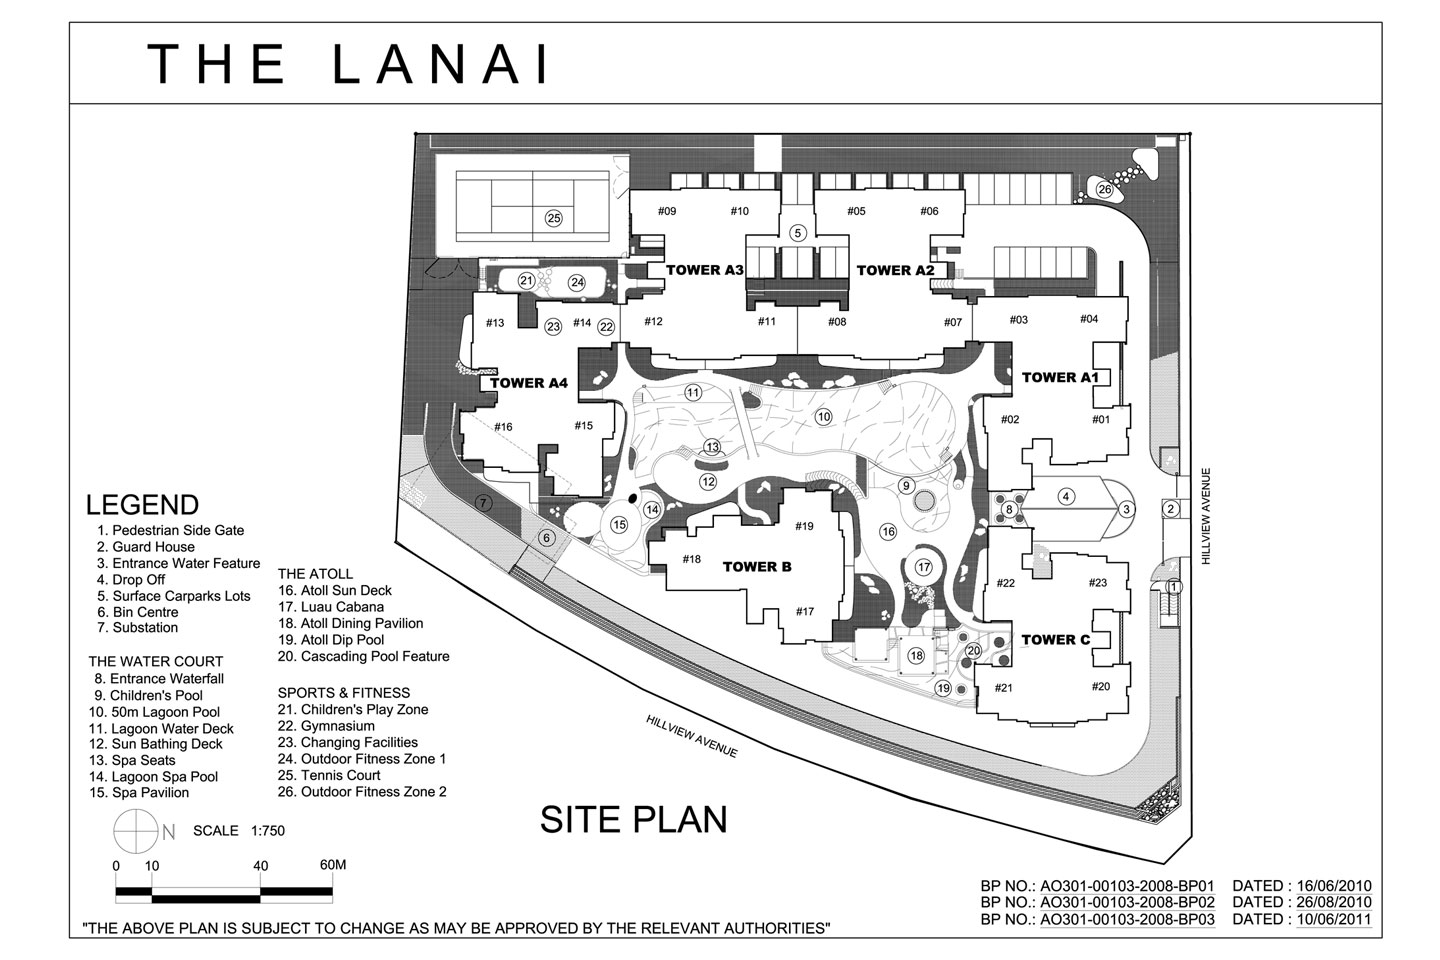 The Lanai Condominium